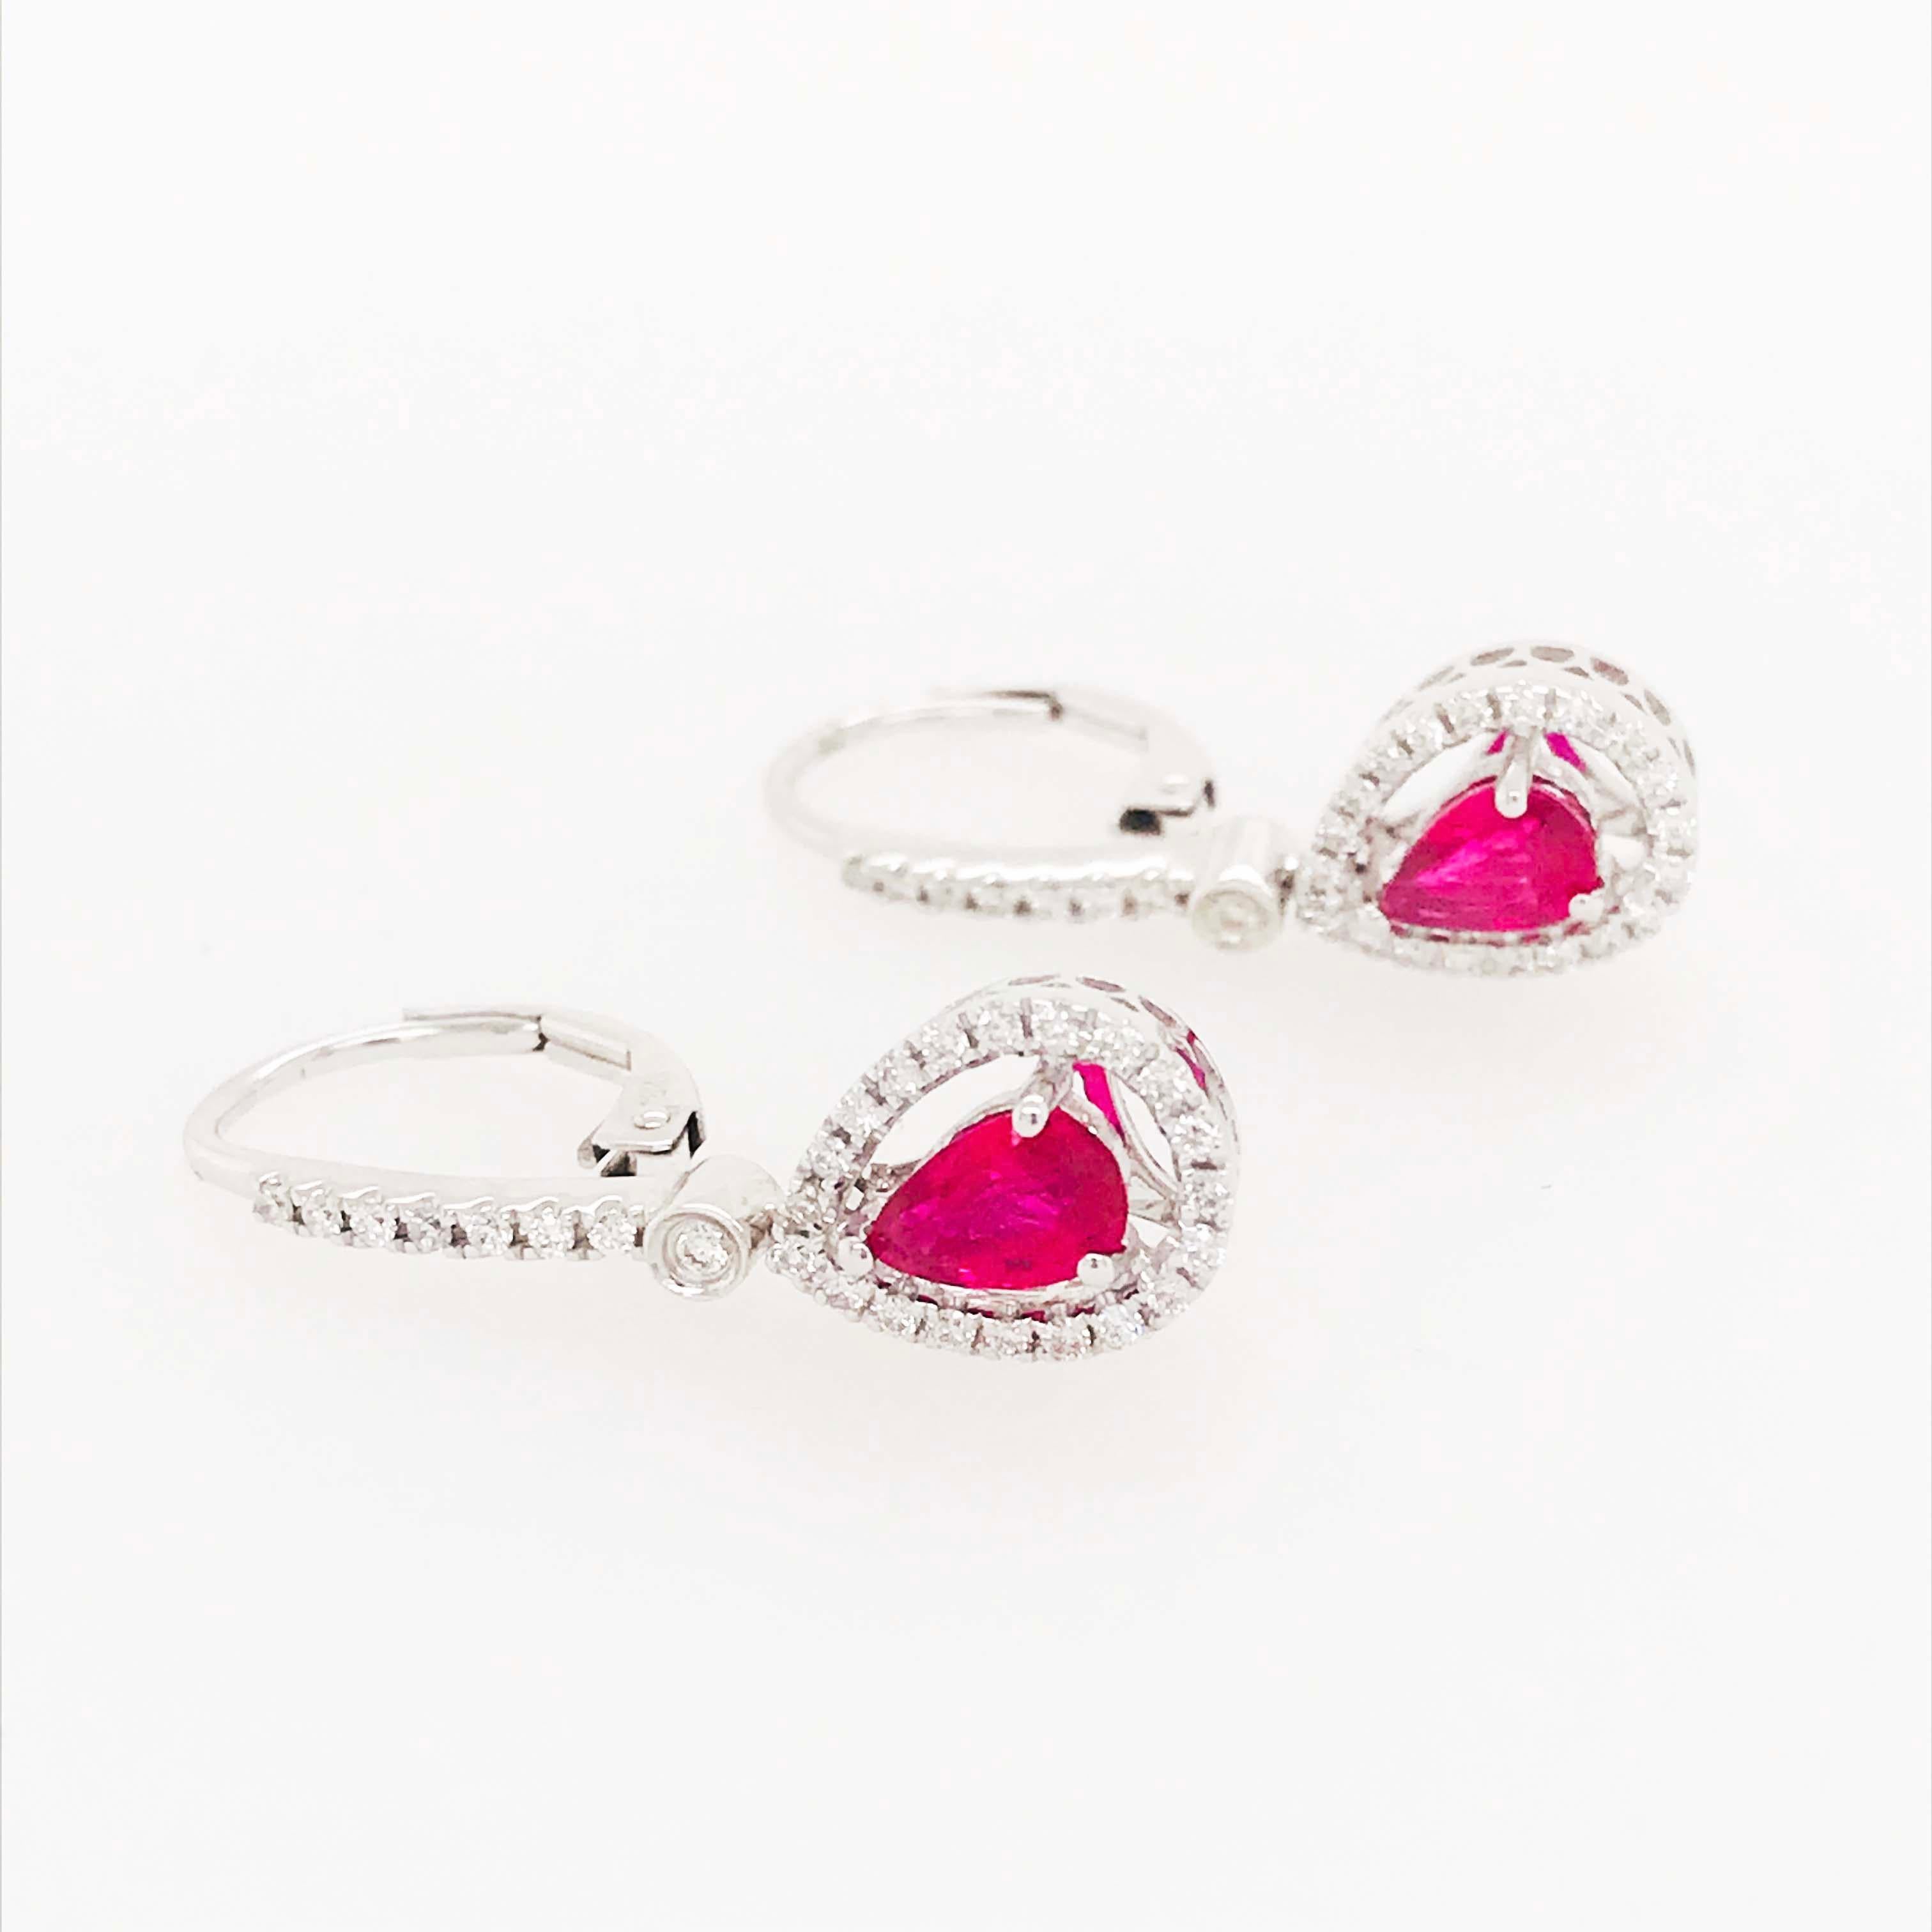 Diese Ohrringe mit echten Rubinen und Diamanten sind atemberaubend! Am unteren Ende jedes Ohrrings ist ein birnenförmiger Rubin gefasst, umrahmt von einem diamantenen Halo, der funkelt und den Rubin wunderschön zur Geltung bringt. Die rubinroten